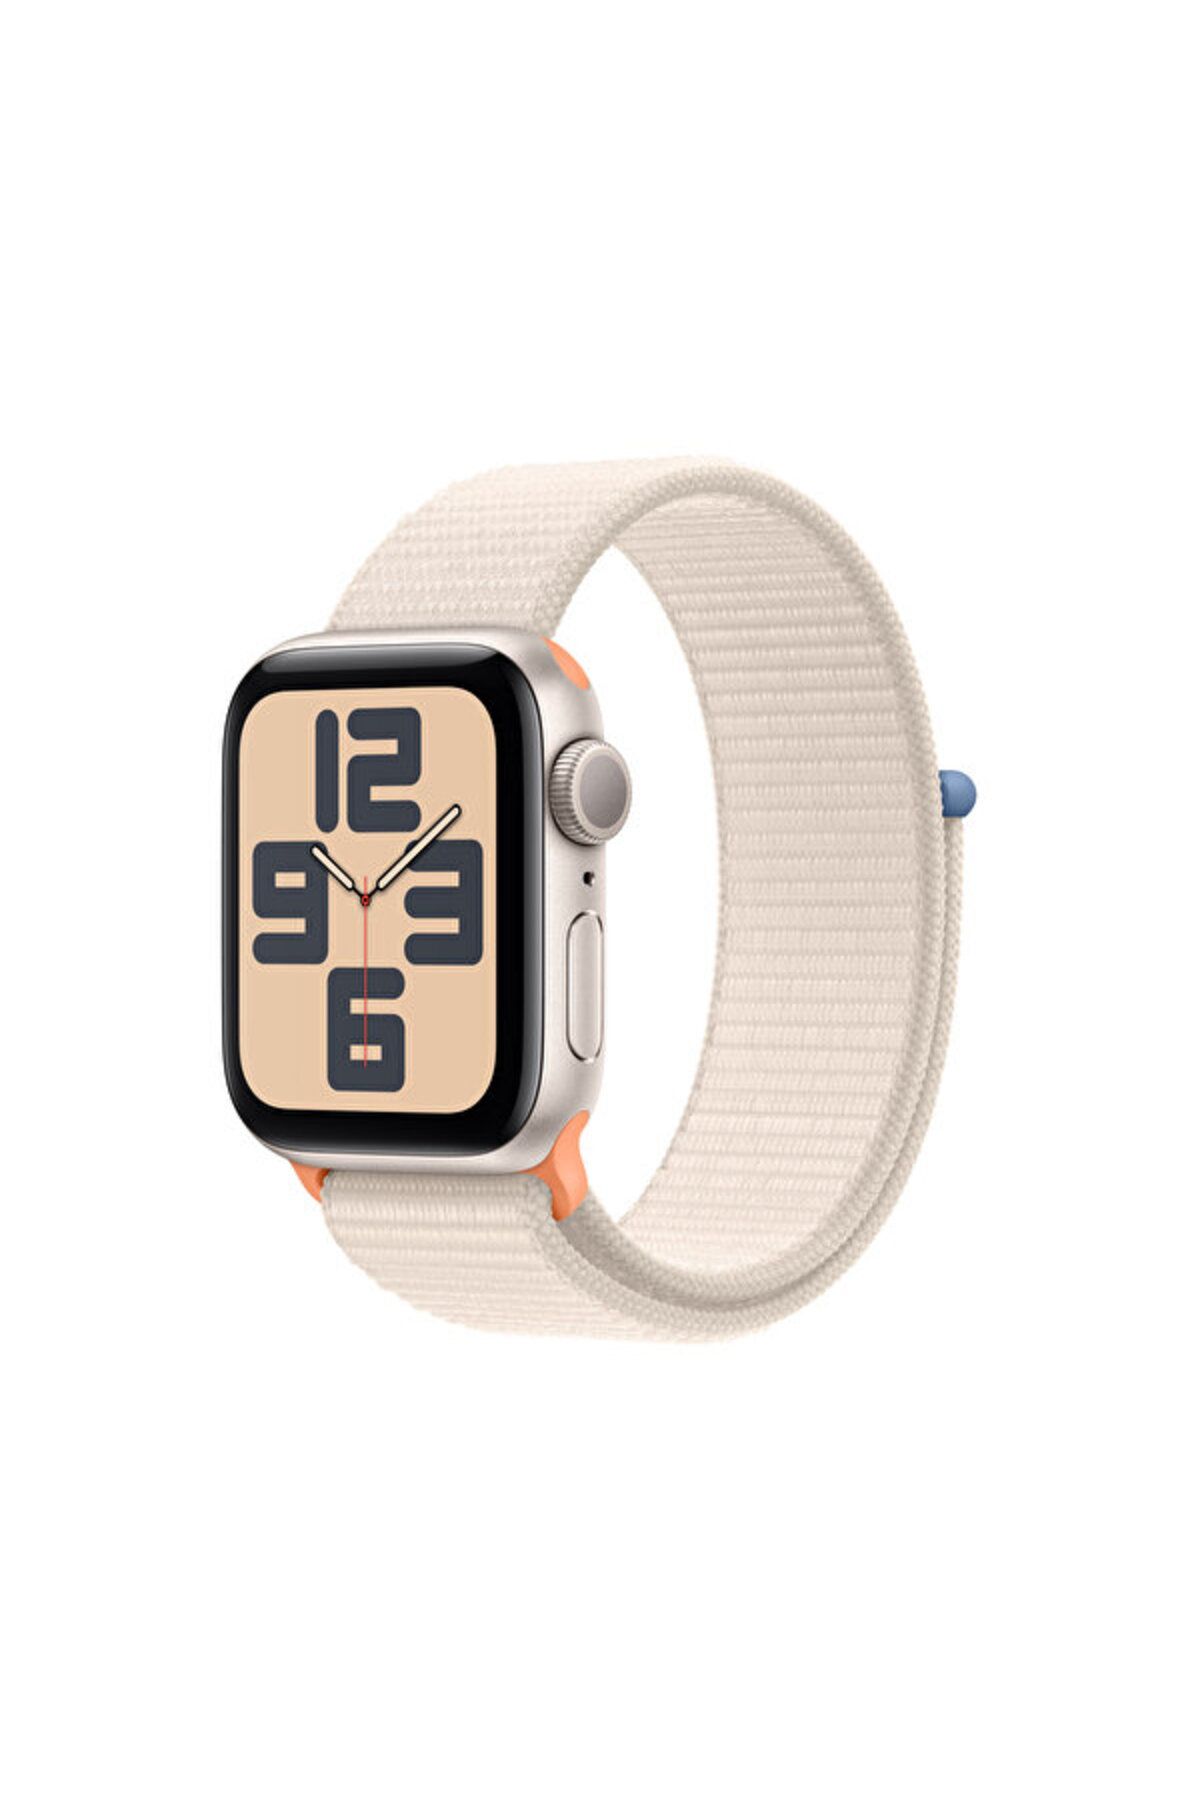 Apple Watch Se Gps 40mm Yıldız Işığı Alüminyum Kasa Ve Yıldız Işığı Sport Loop